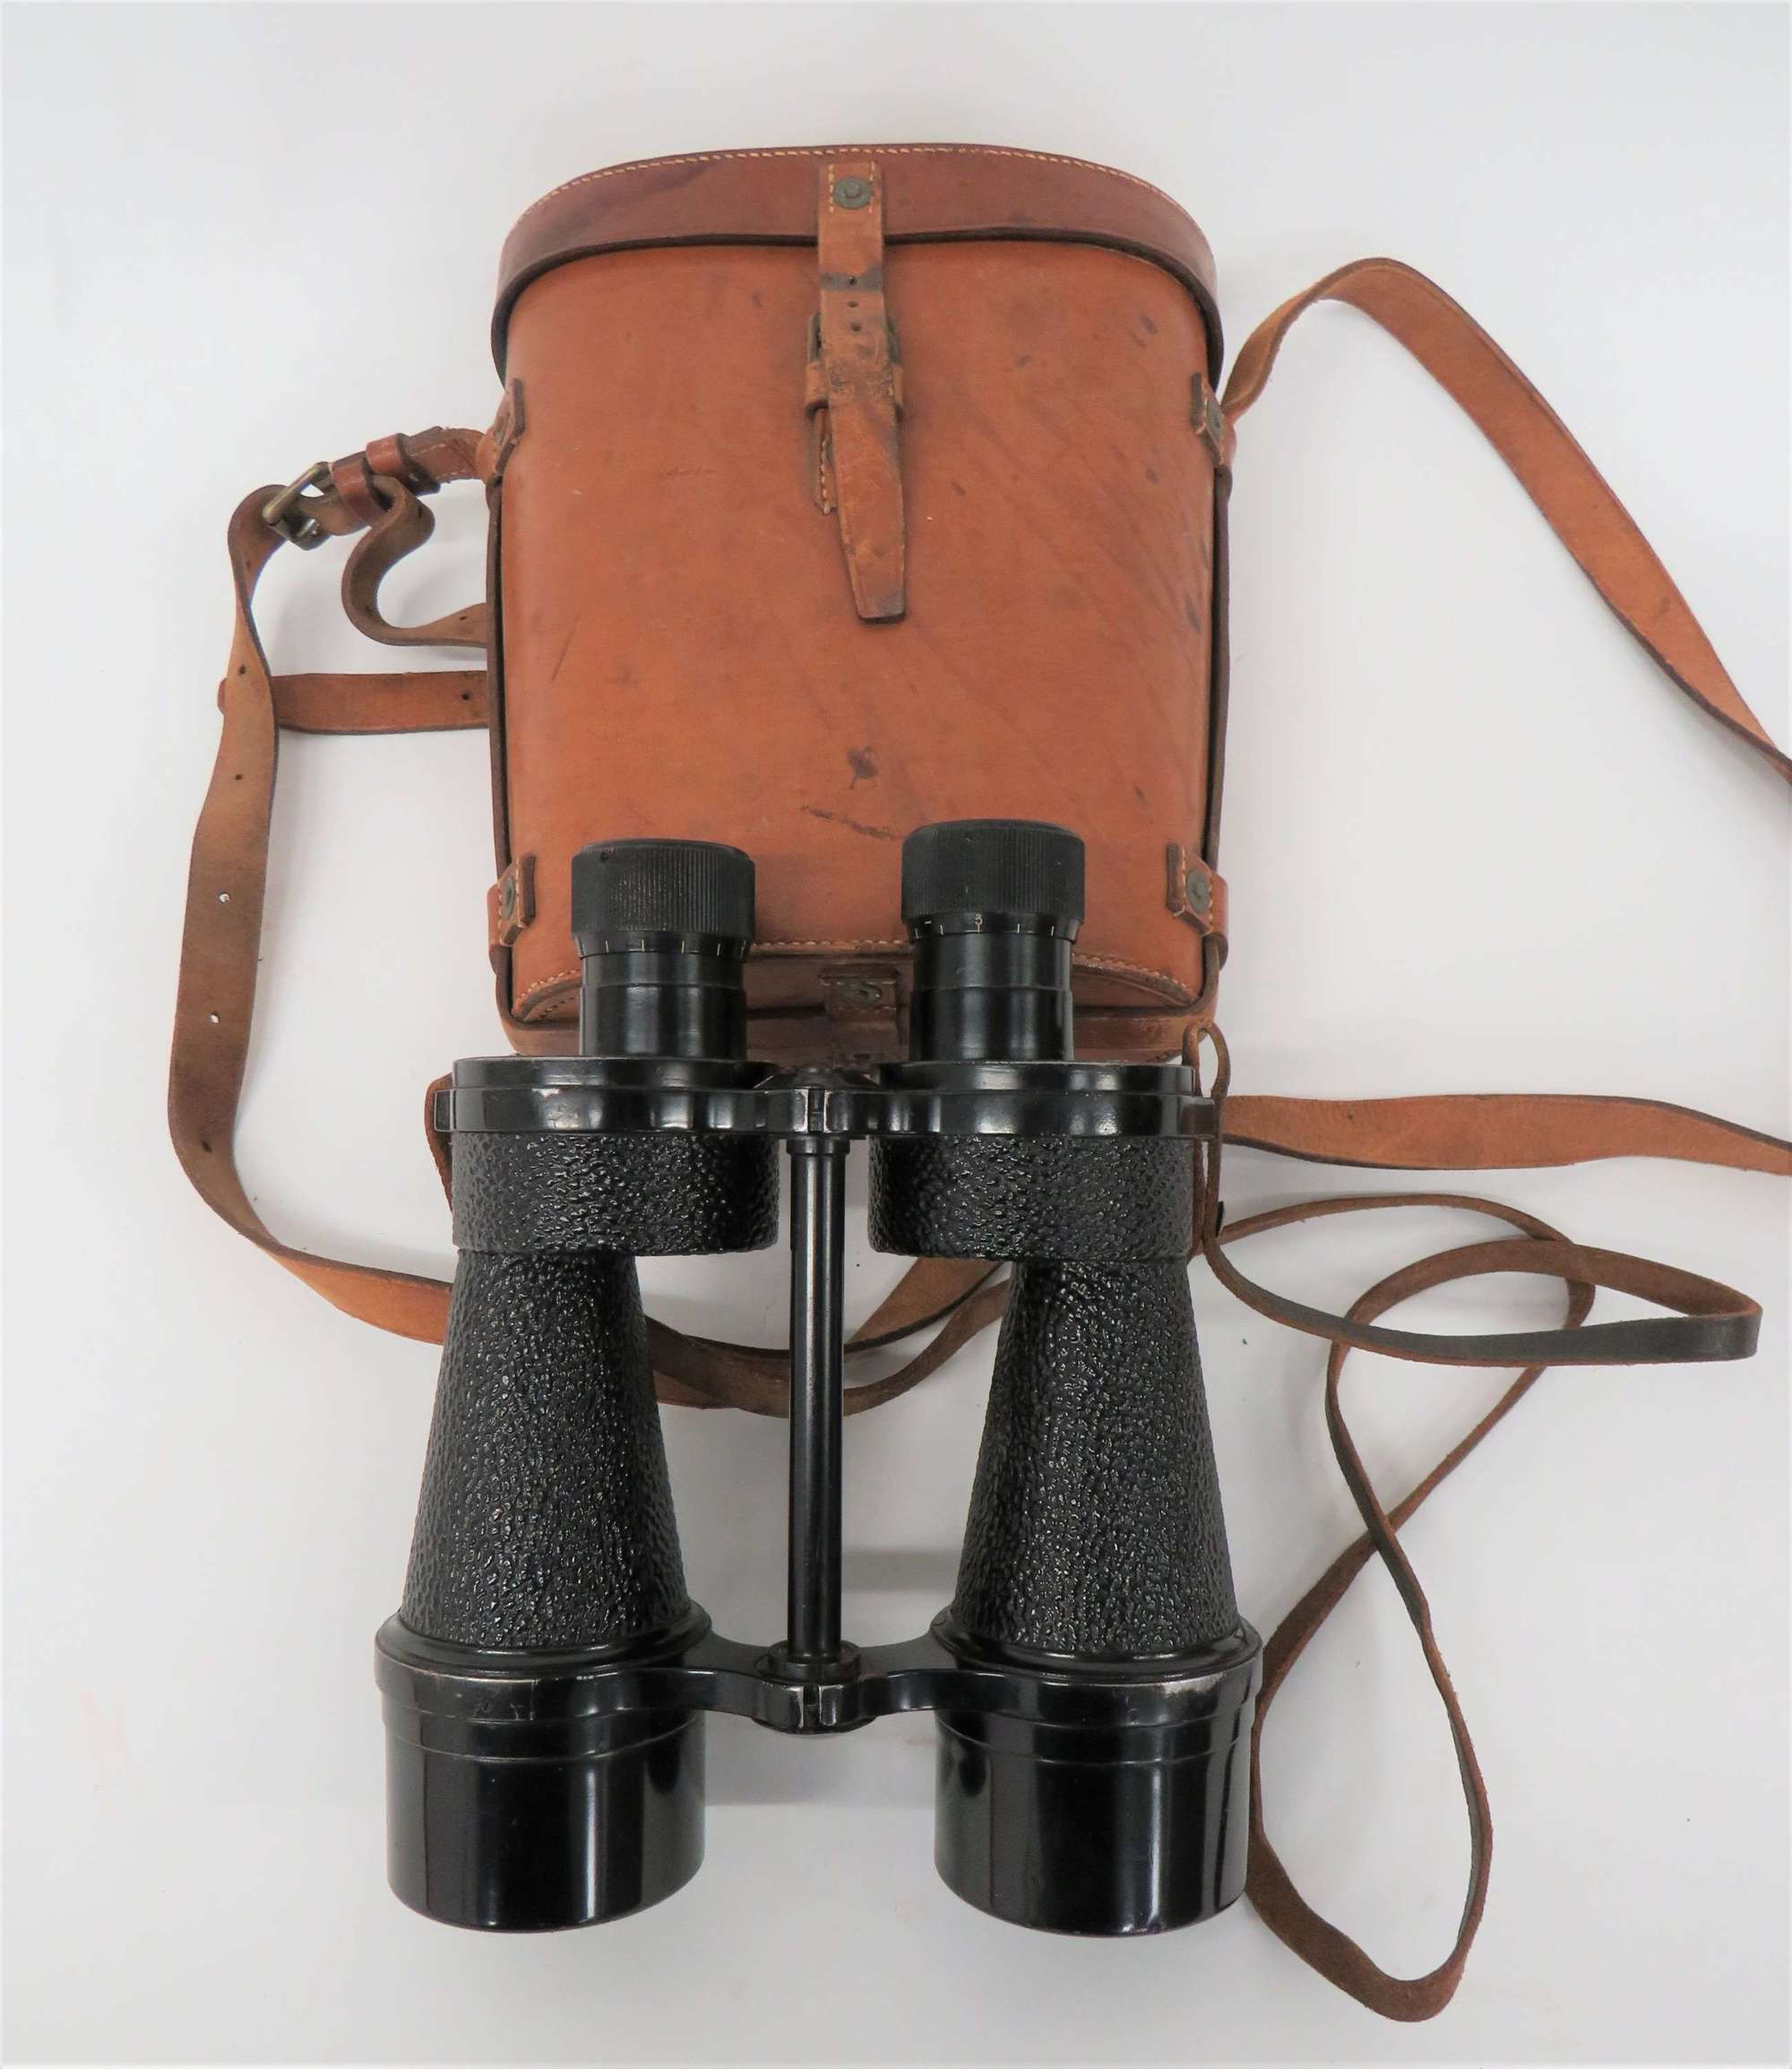 1938 Dated Binoculars by Ross